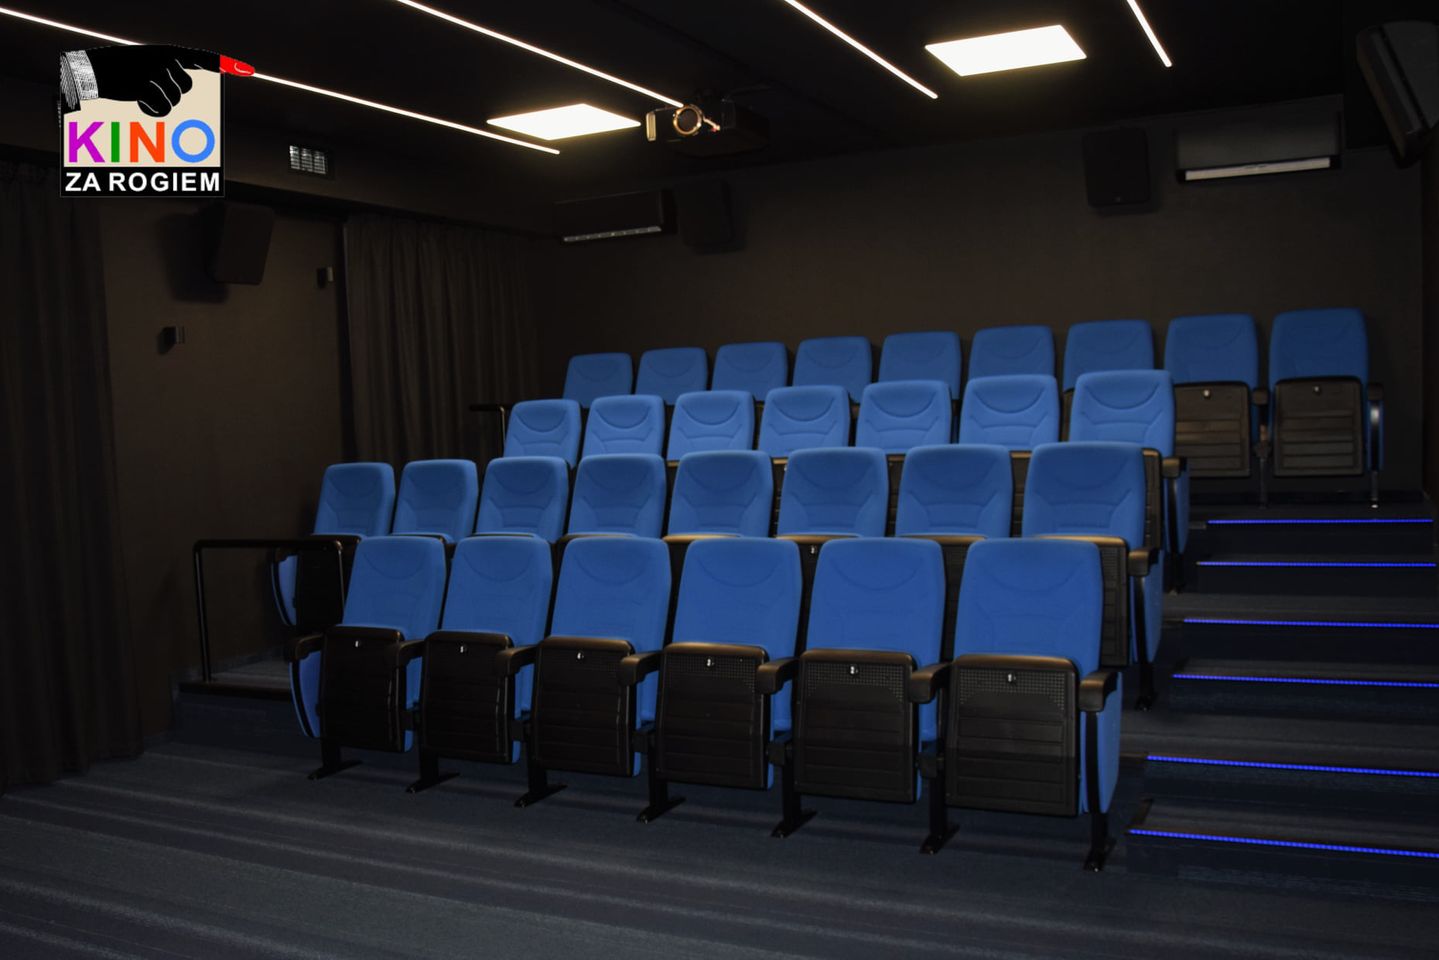 pusta widownia sali kinowej. niebieskie fotele i czarne ściany. w lewym górnym rogu logotyp kina za rogiem